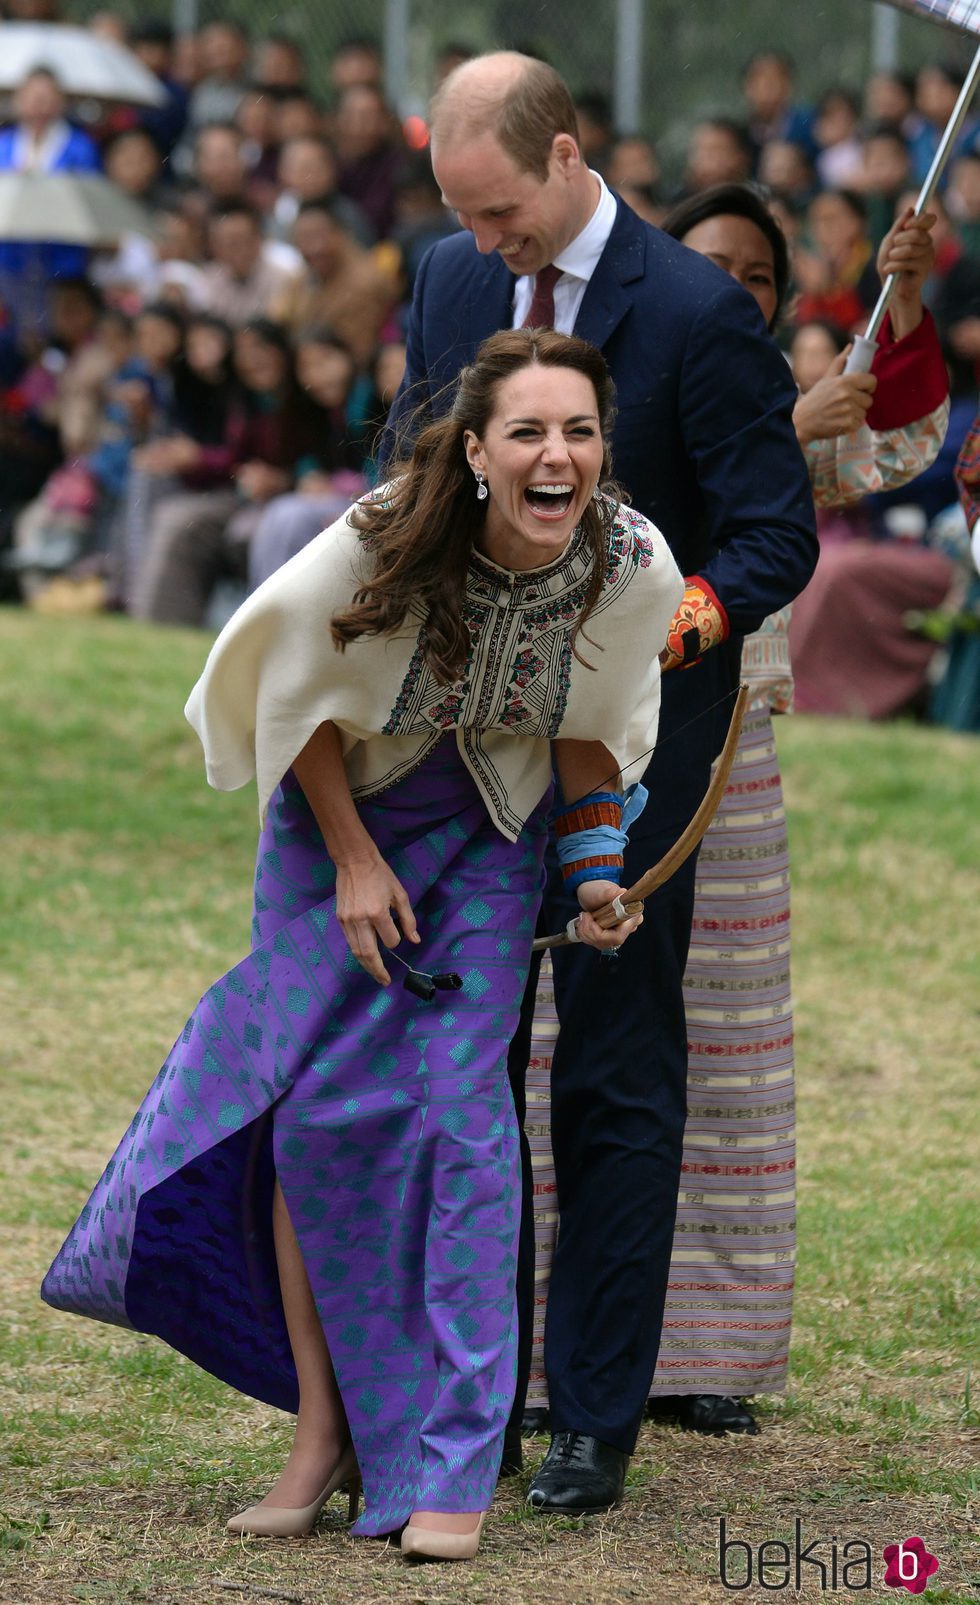 Kate Middleton ríe divertida tras practicar tiro con arco en Bhutan